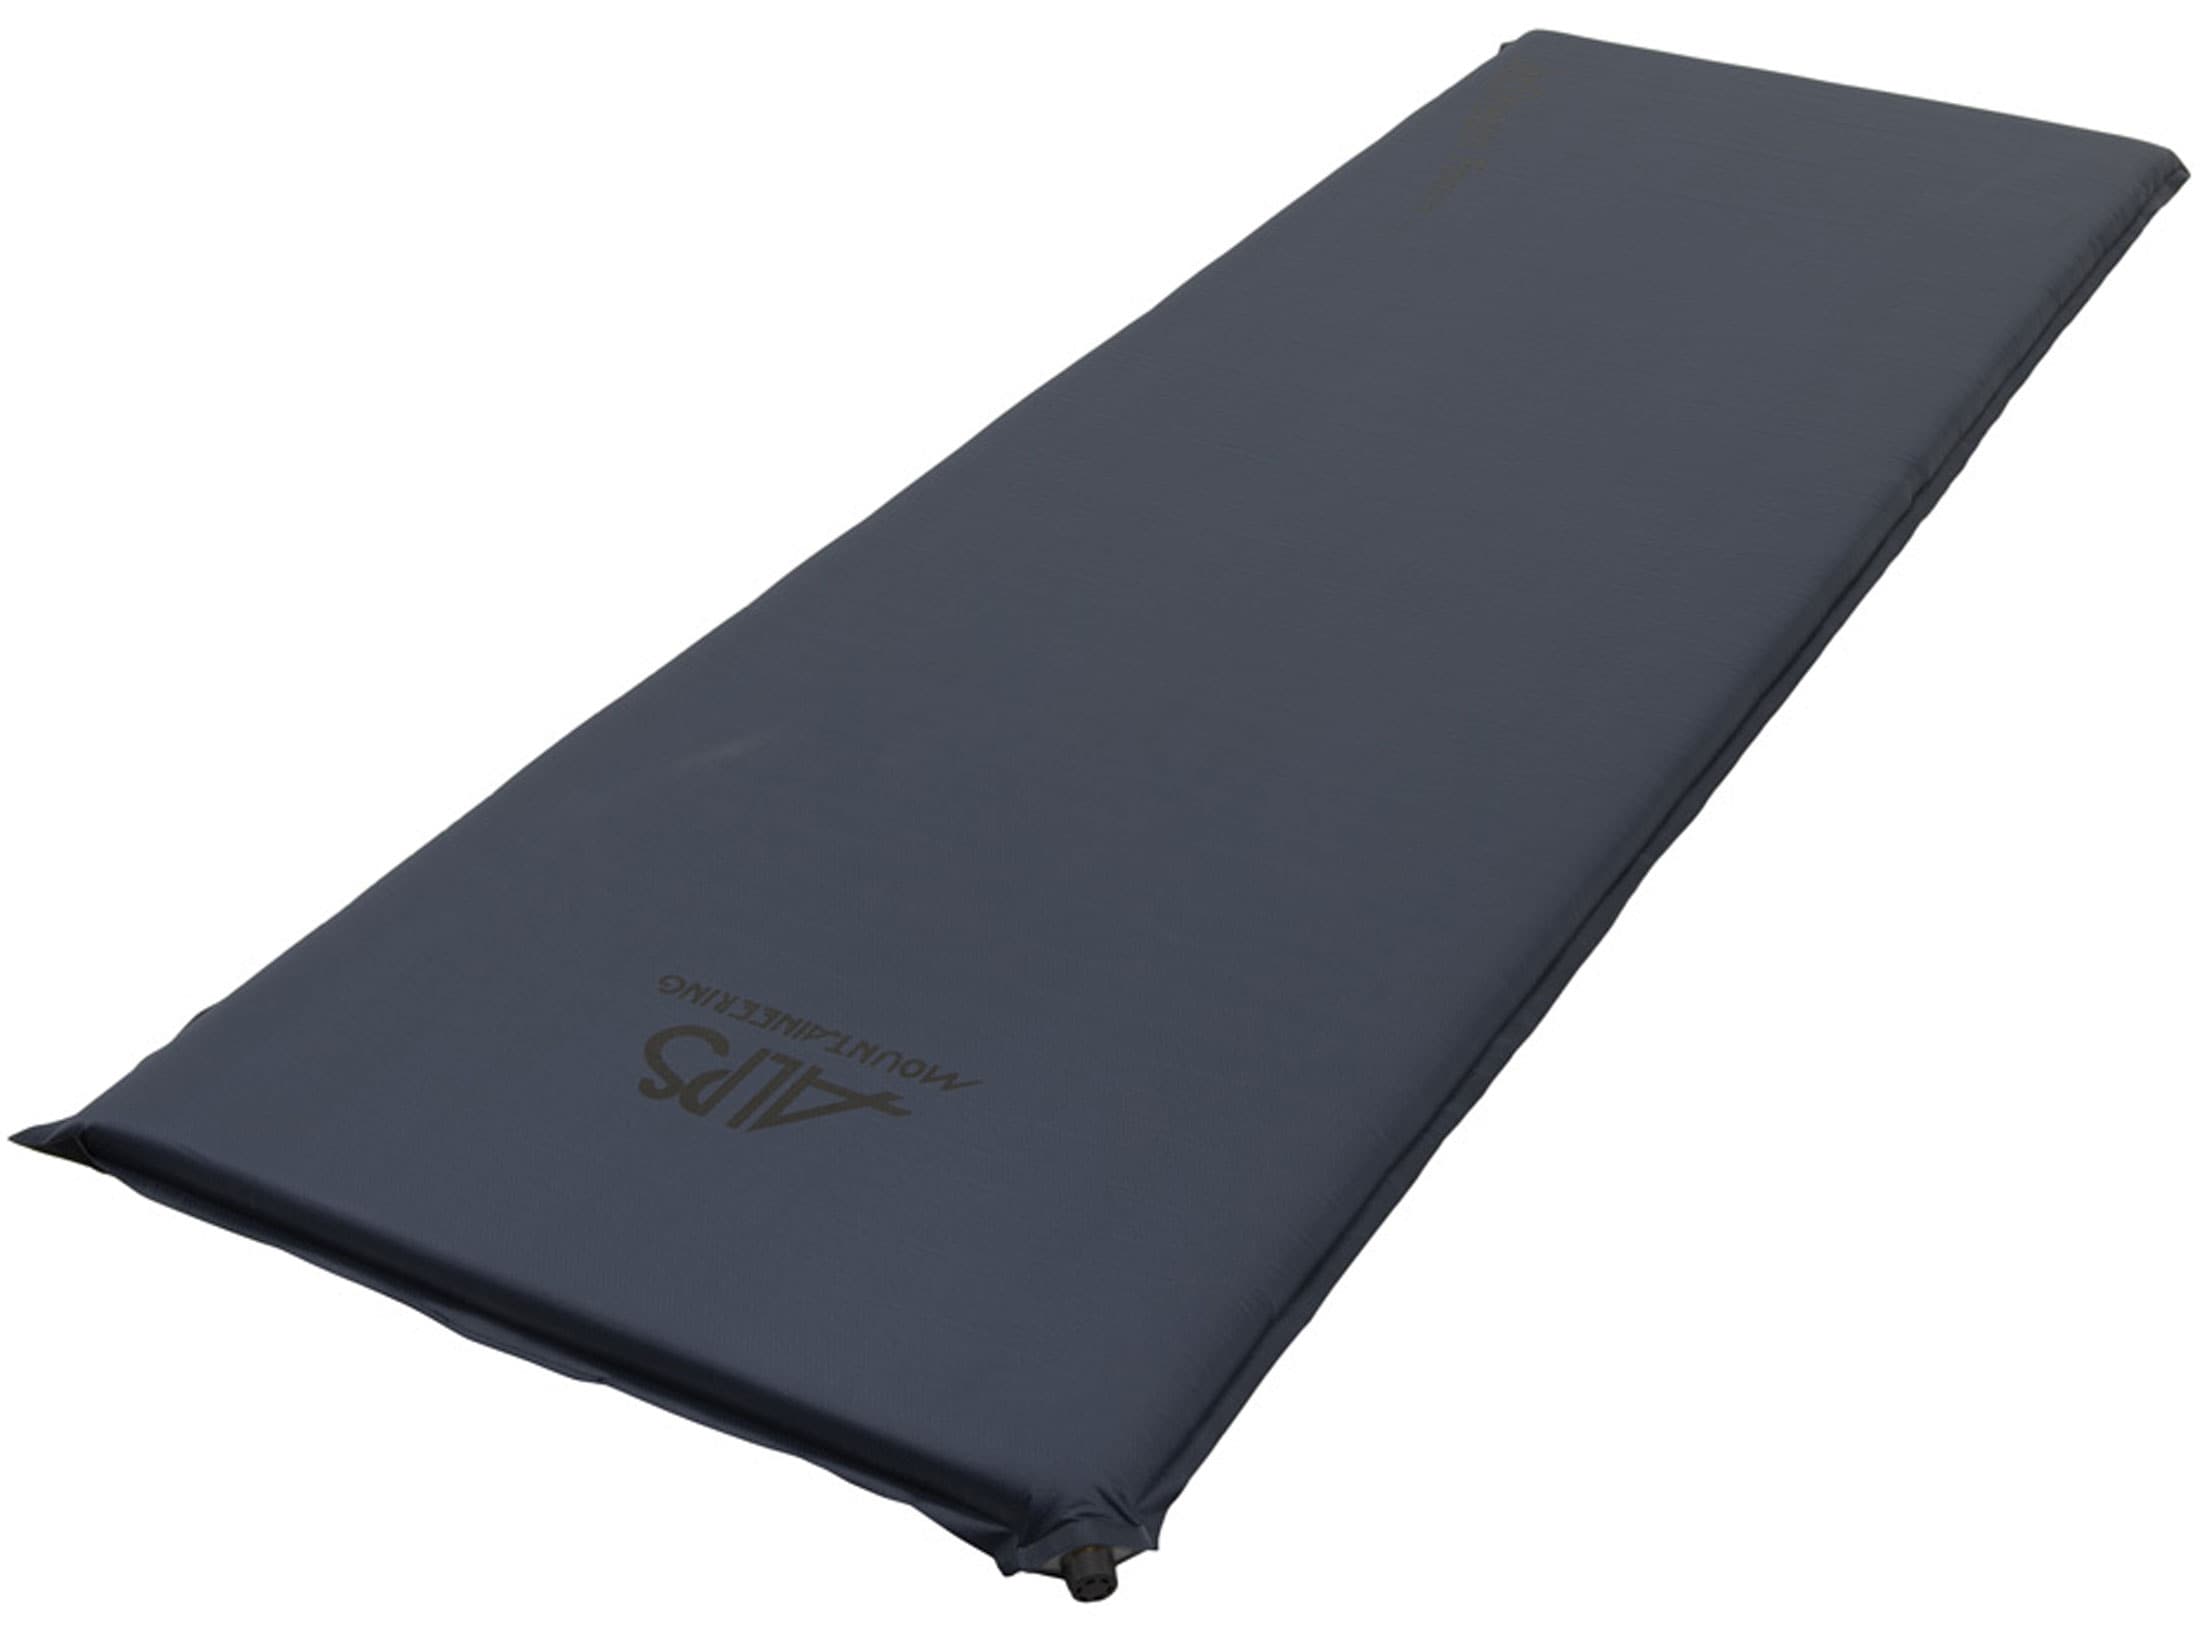 alps lightweight air mattress